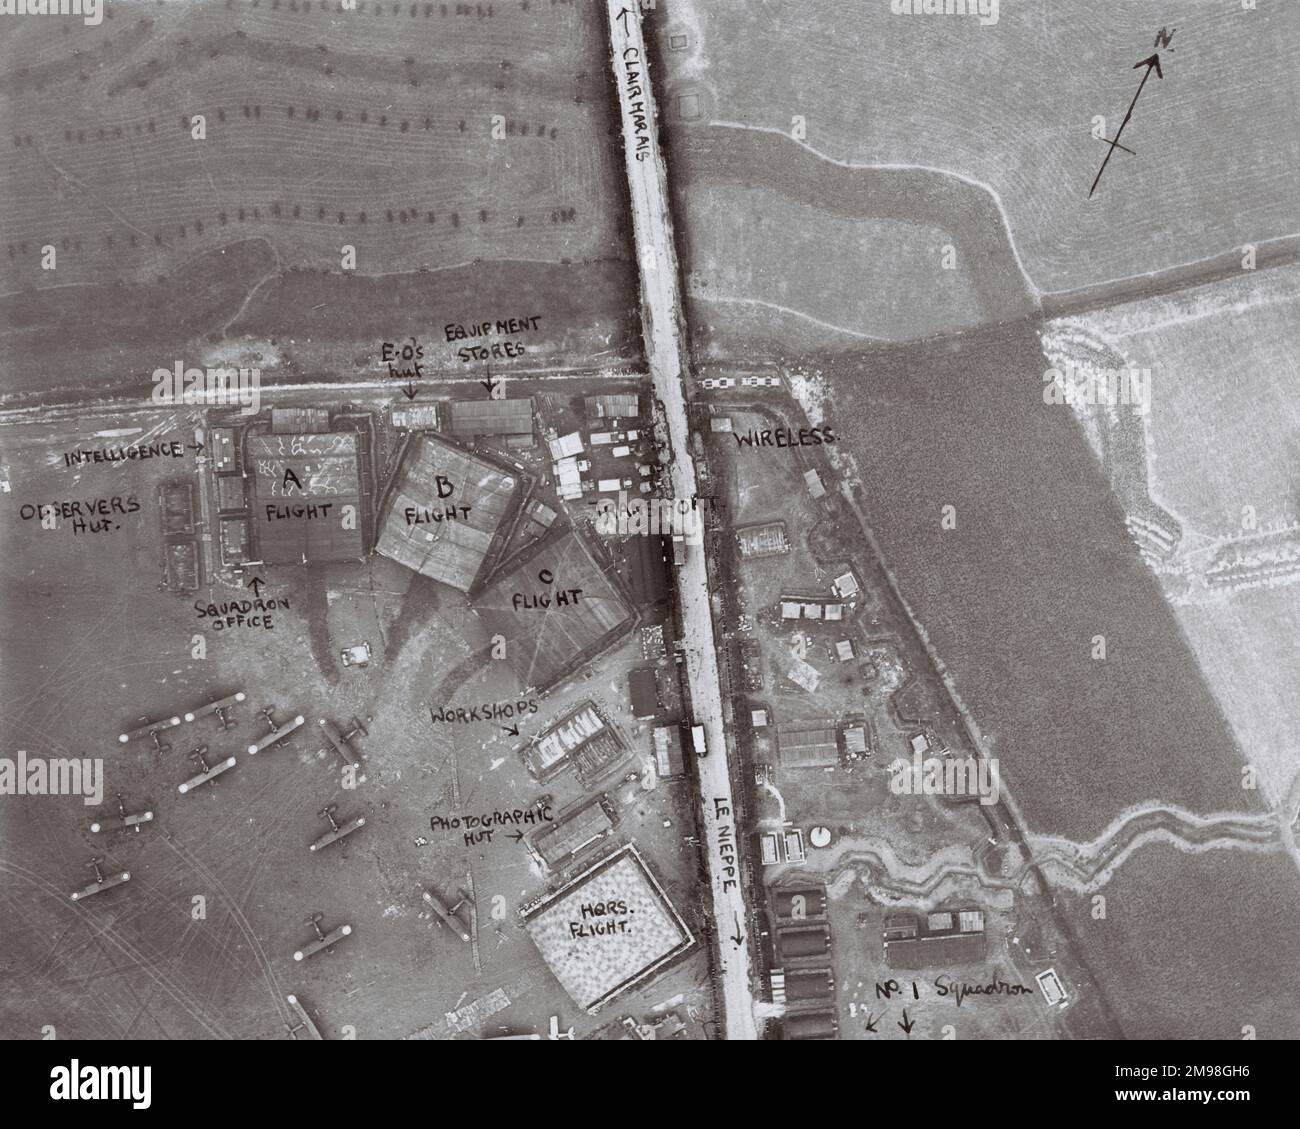 Luftaufnahme eines Teils des Flugplatzes Clairmarais, Pas de Calais, Nordfrankreich, mit handschriftlichen Anmerkungen, die Gebäude und Flugzeuge zeigen. Stockfoto